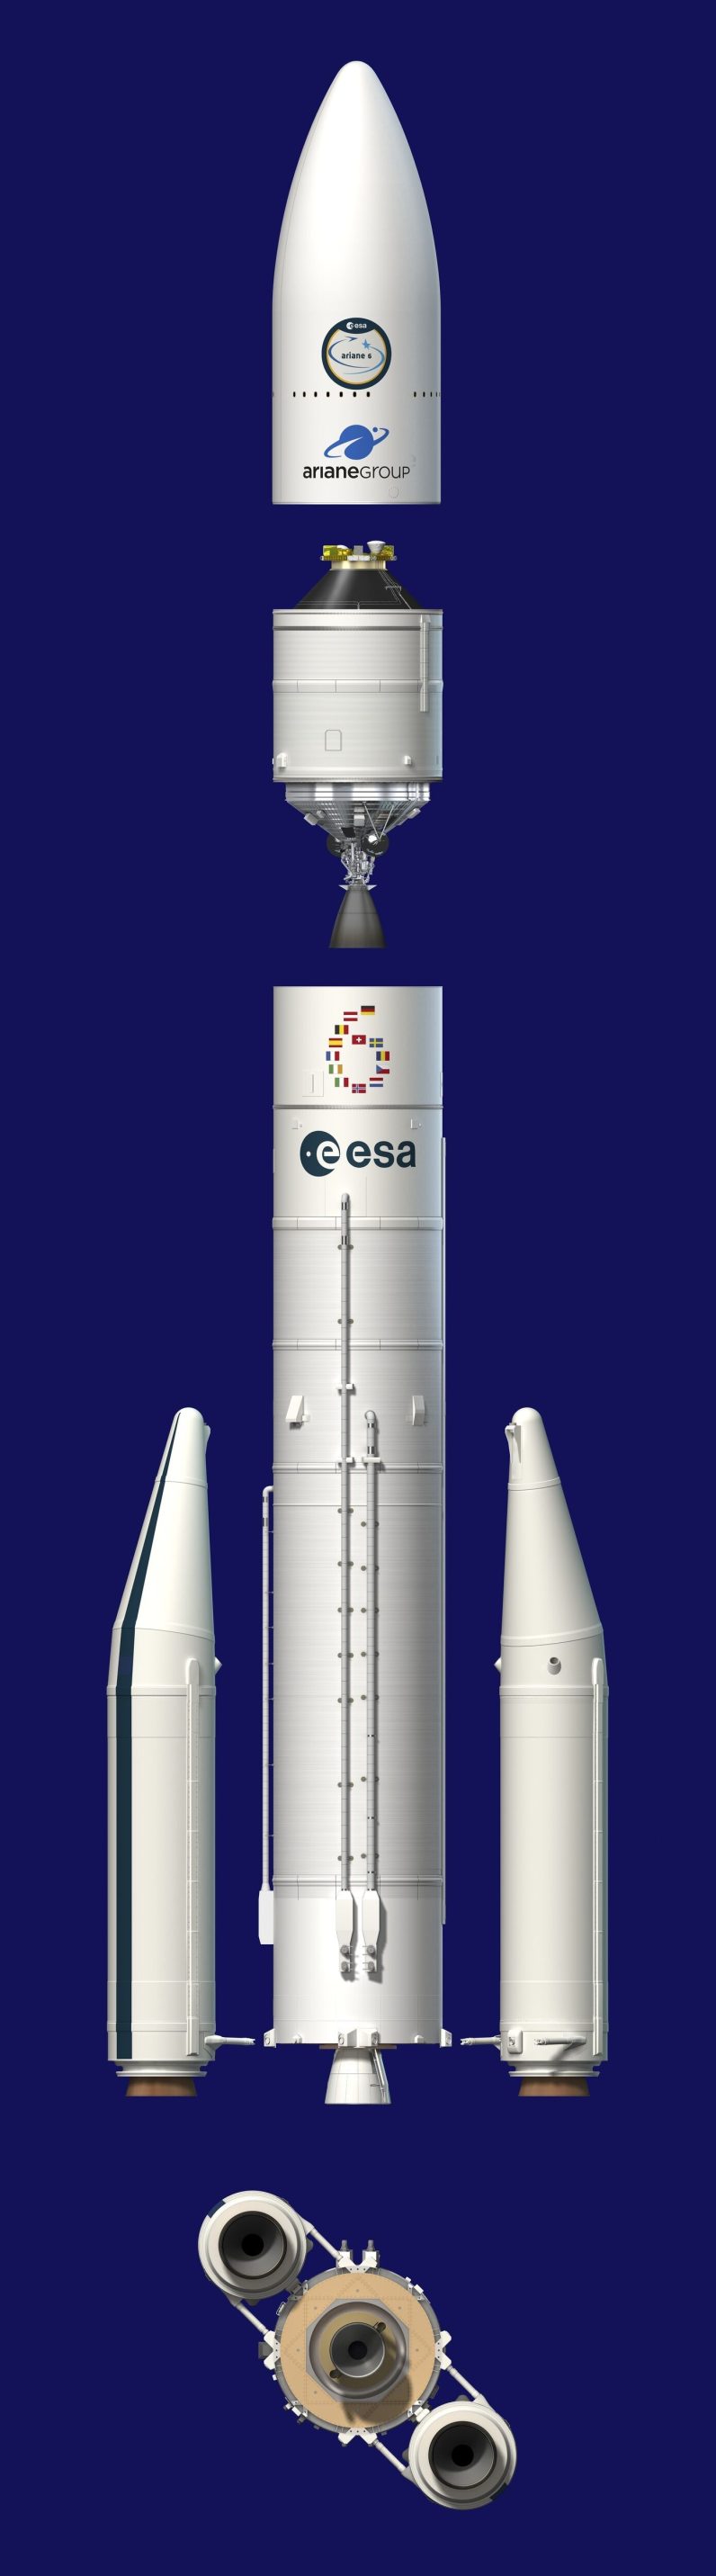 Ariane 6 bileşenlerinin sanatçı tarafından tasviri. 